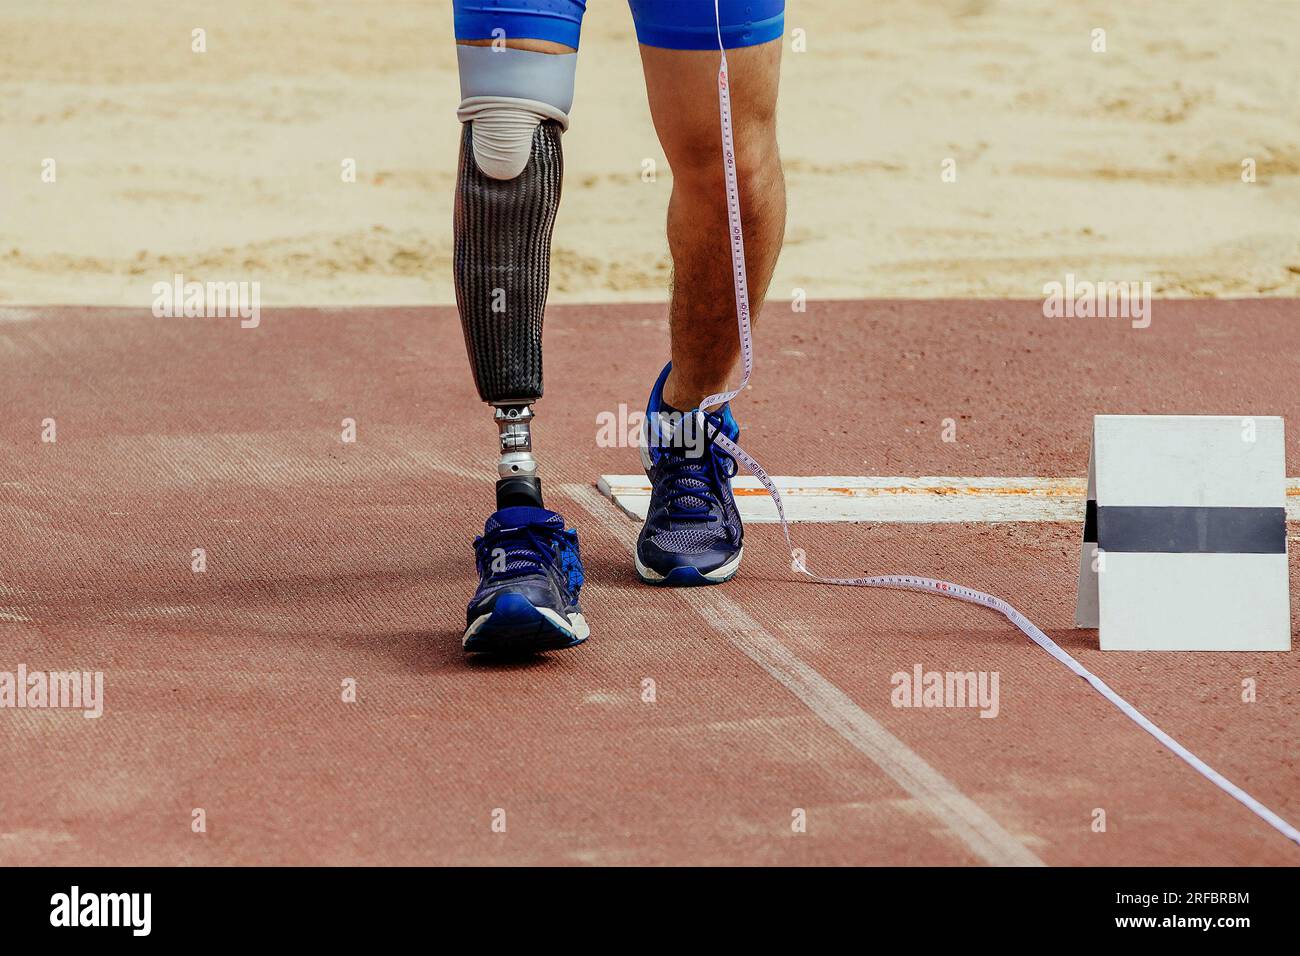 la disabilità dell'atleta misura il run-up nel salto in lungo durante le competizioni di atletica leggera, le partite estive sportive Foto Stock